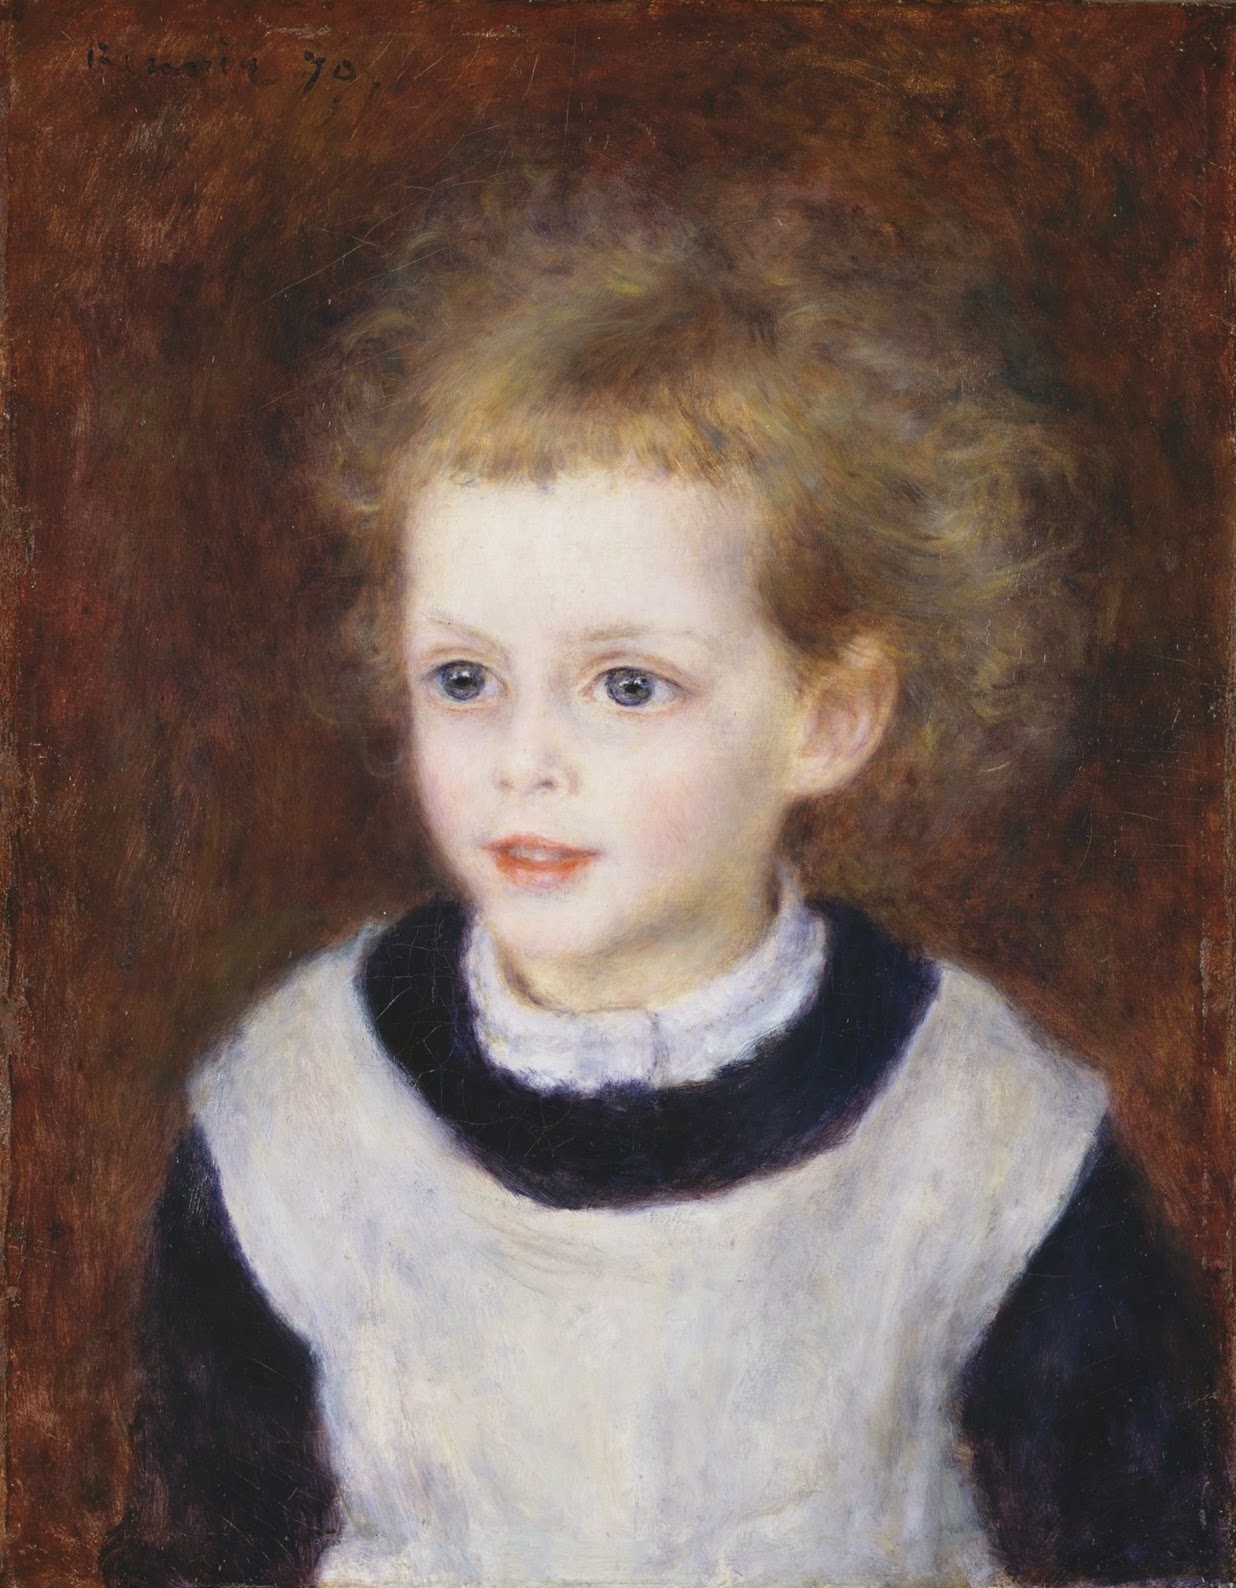 Pierre+Auguste+Renoir-1841-1-19 (114).jpg